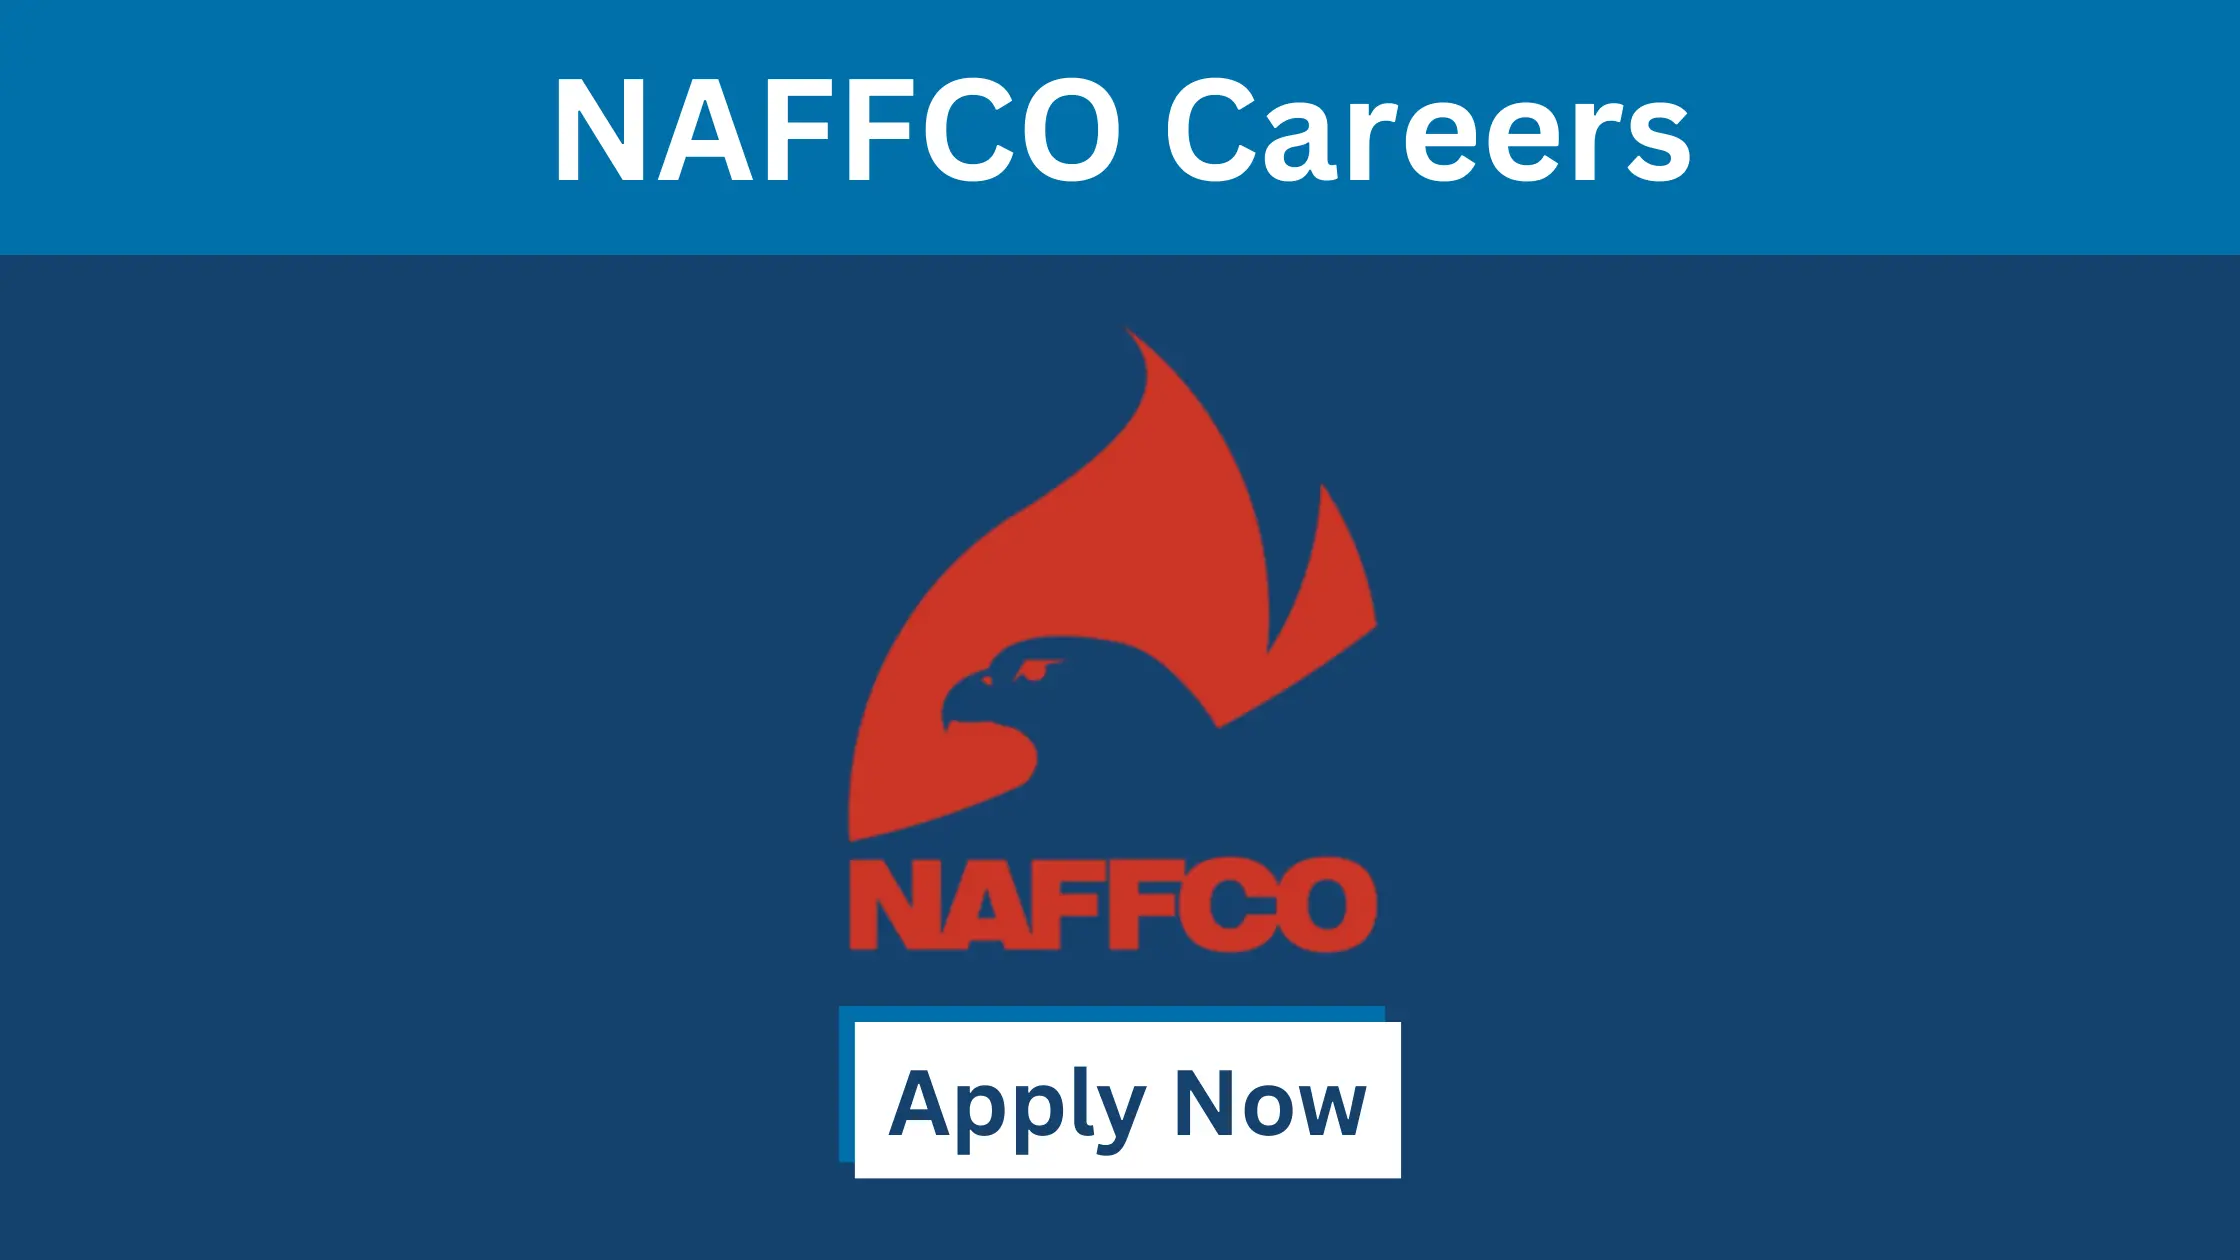 NAFFCO Careers in UAE